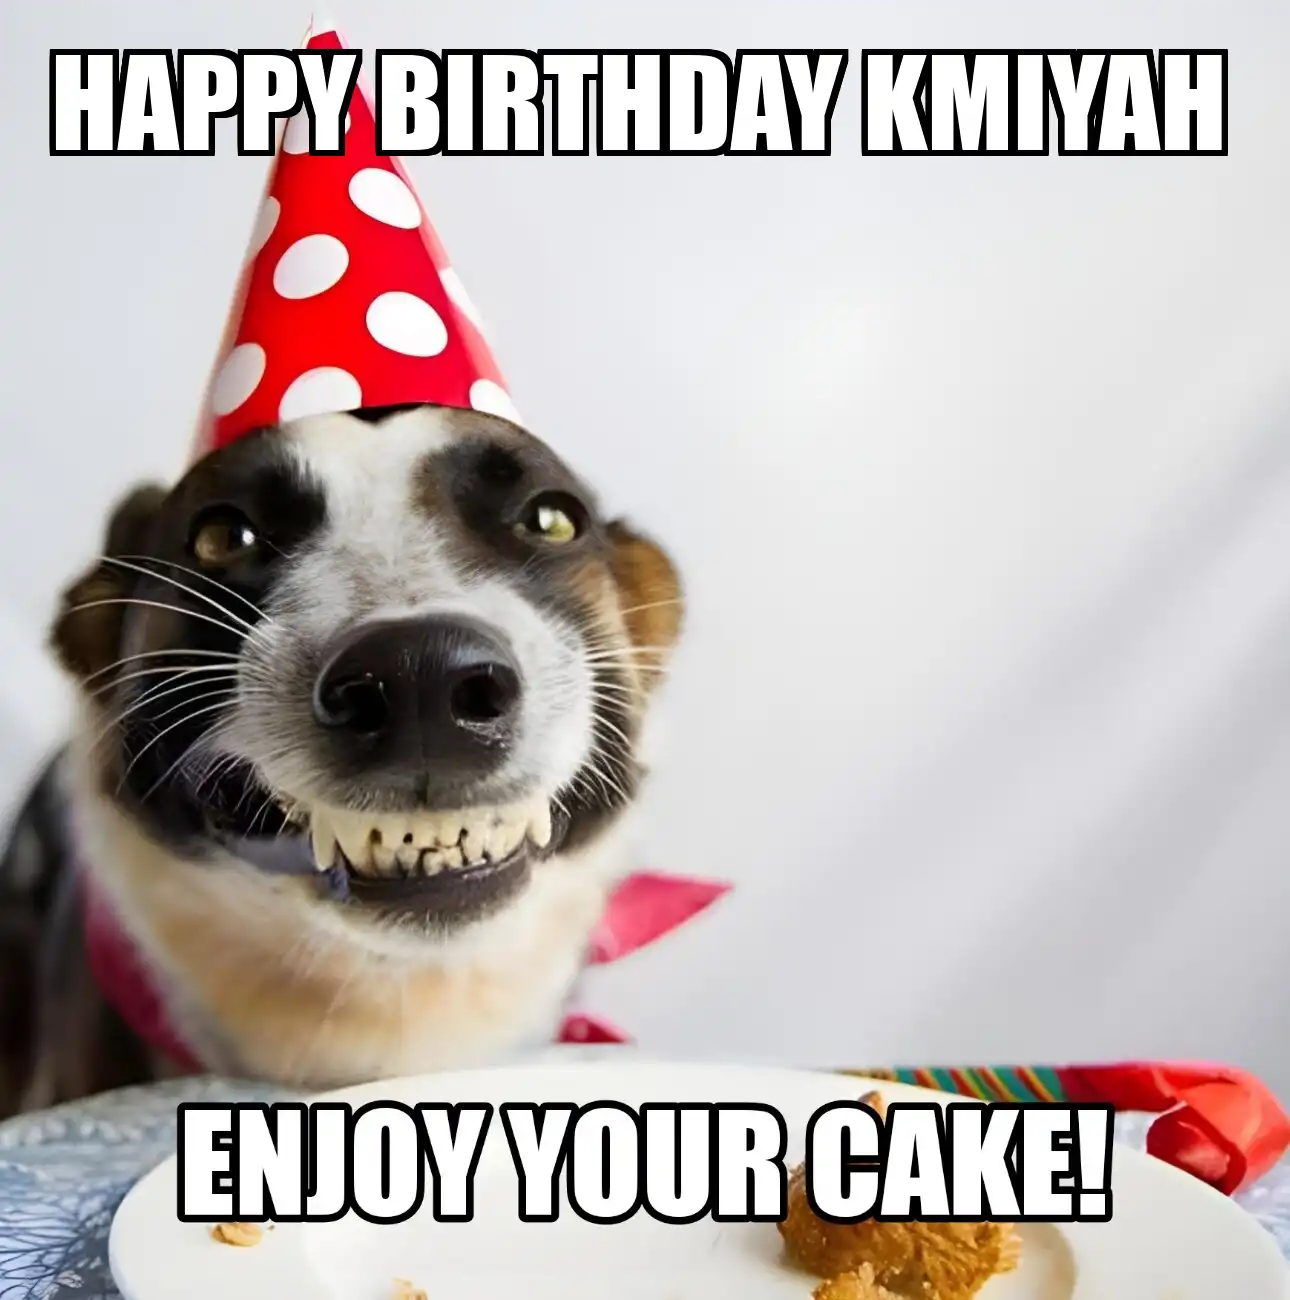 Happy Birthday Kmiyah Enjoy Your Cake Dog Meme